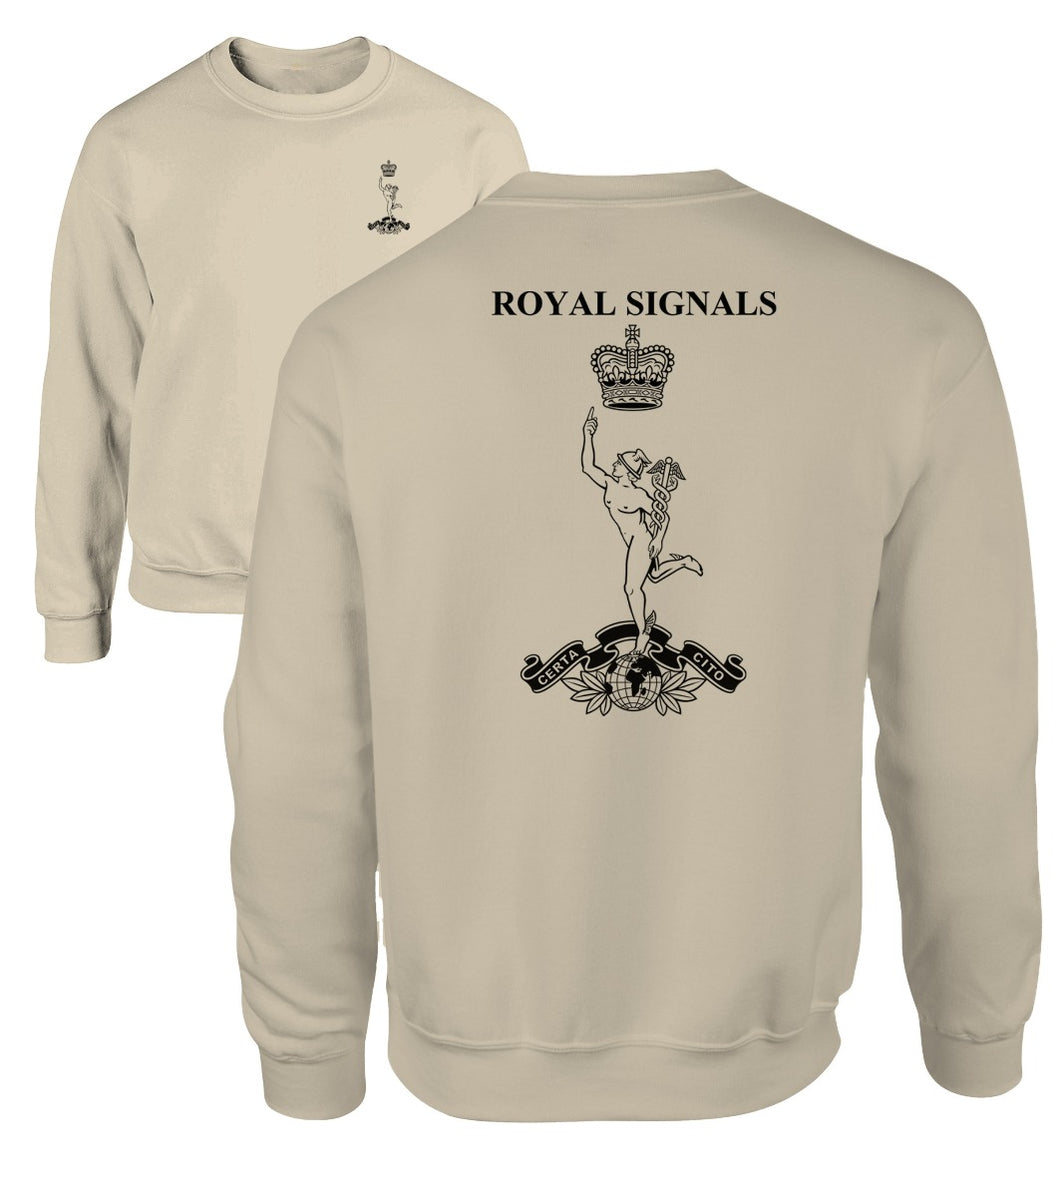 Double Printed Royal Signals (SIGS) Sweatshirt